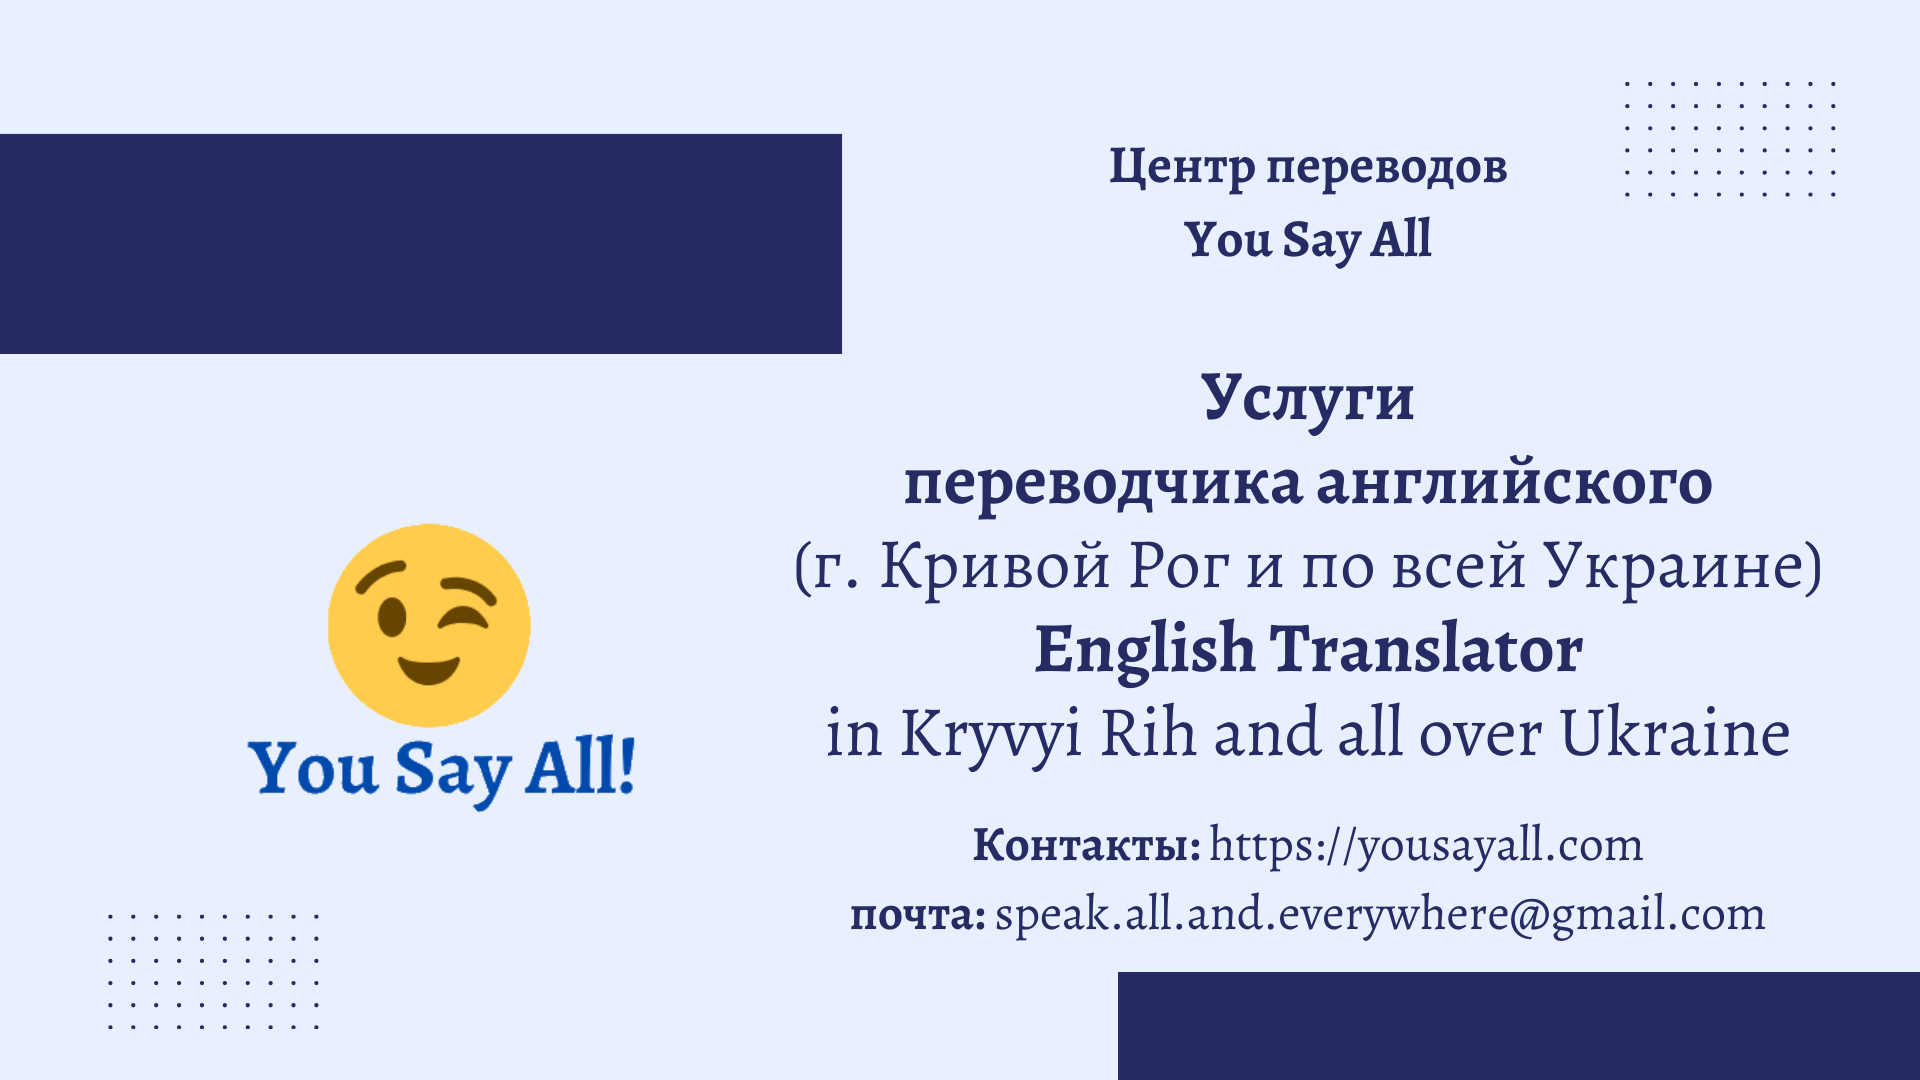 услуги переводчика английского Кривой Рог и по всей Украине